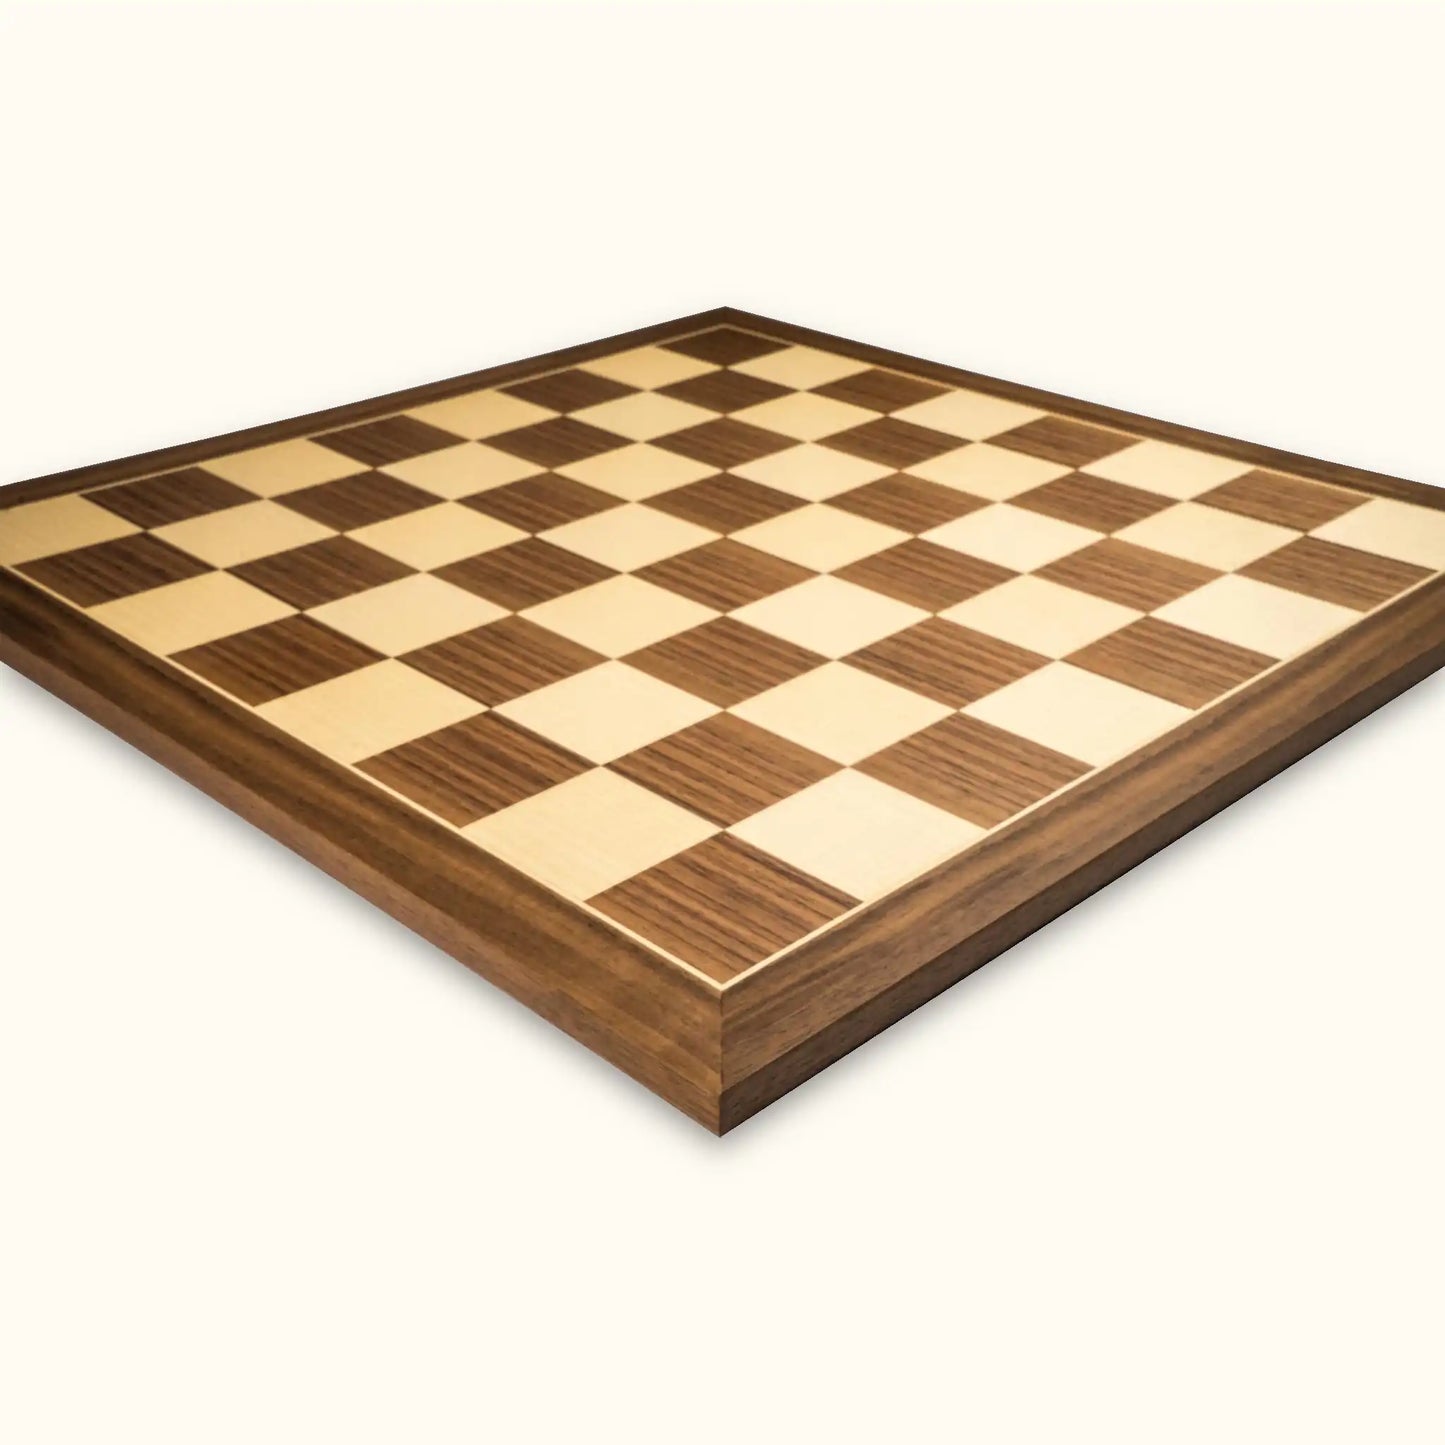 Chessboard Walnut Standard 55 mm walnut maple side view